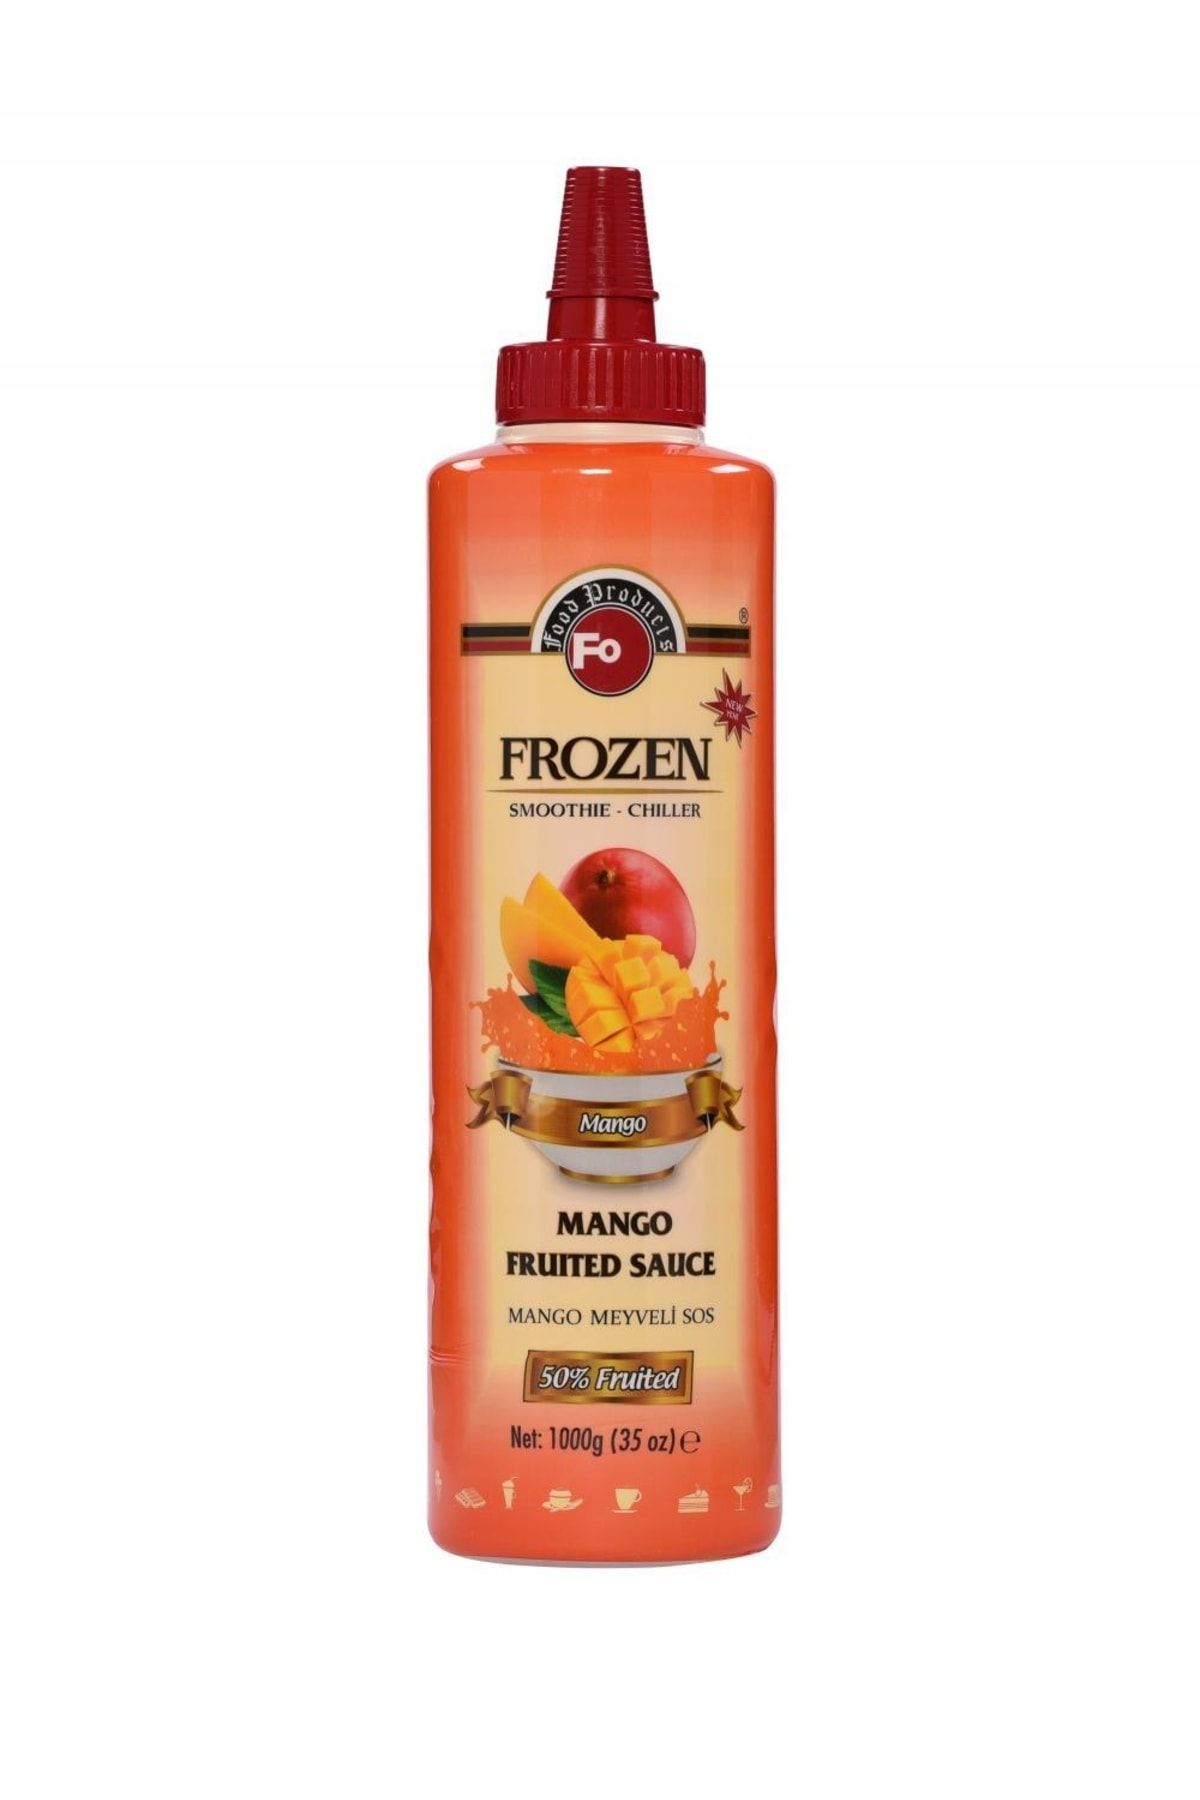 FO Mango Meyve Püresi